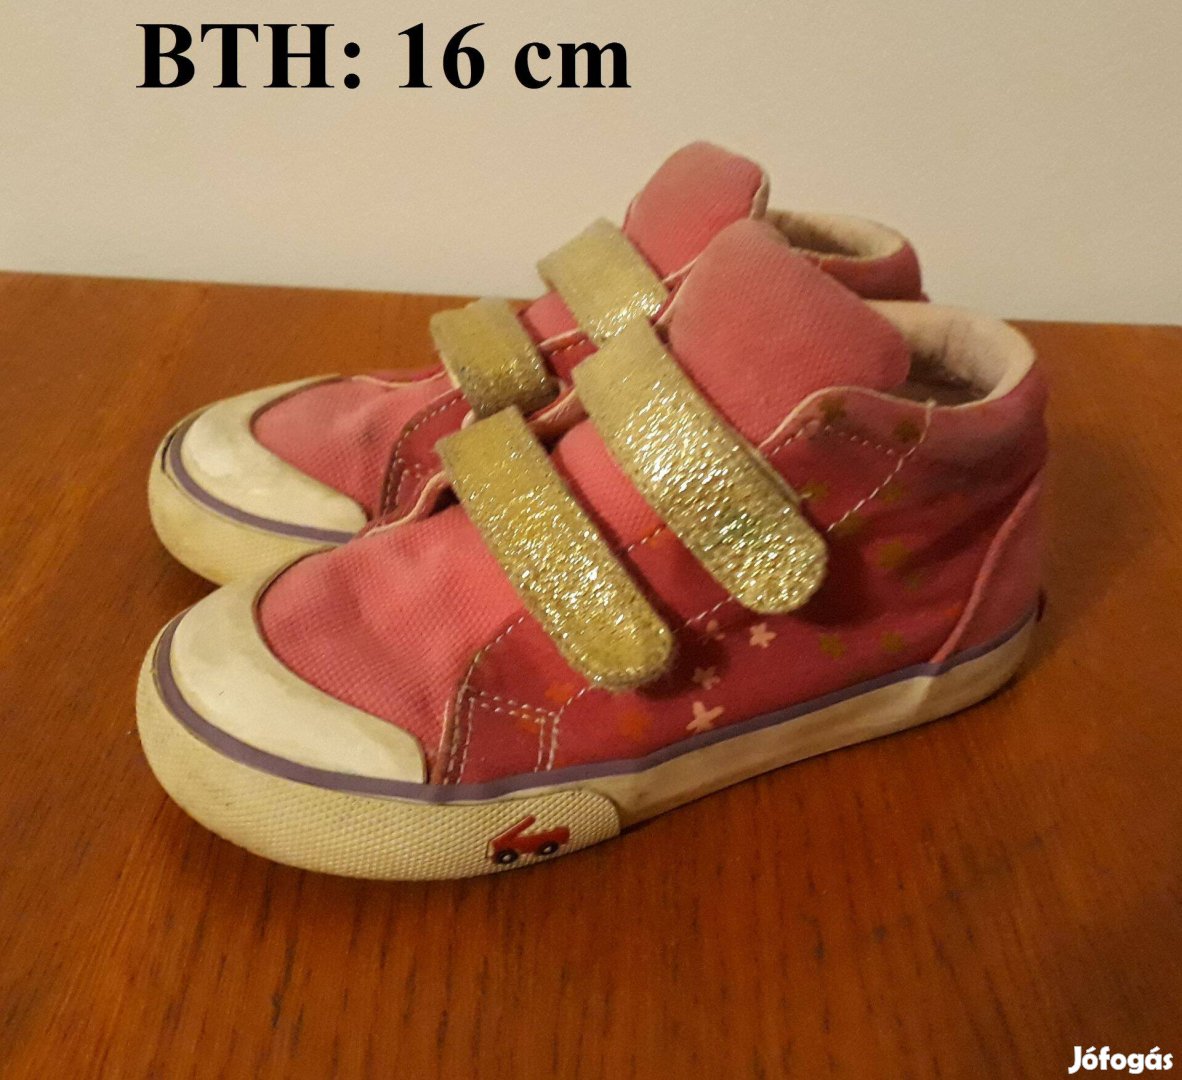 Kislány tornacipő, BTH: 16 cm